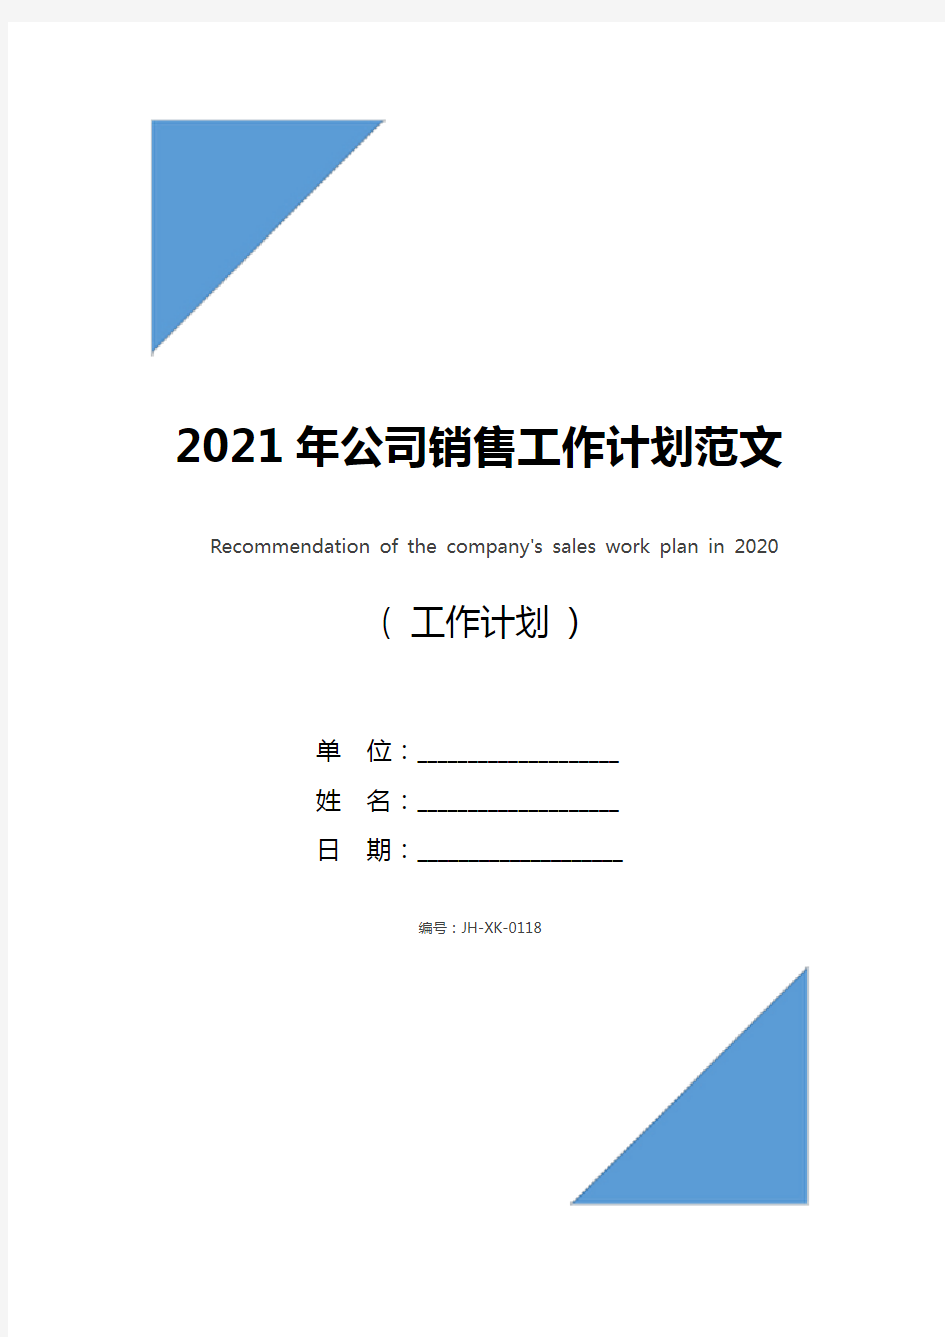 2021年公司销售工作计划范文推荐(最新版)